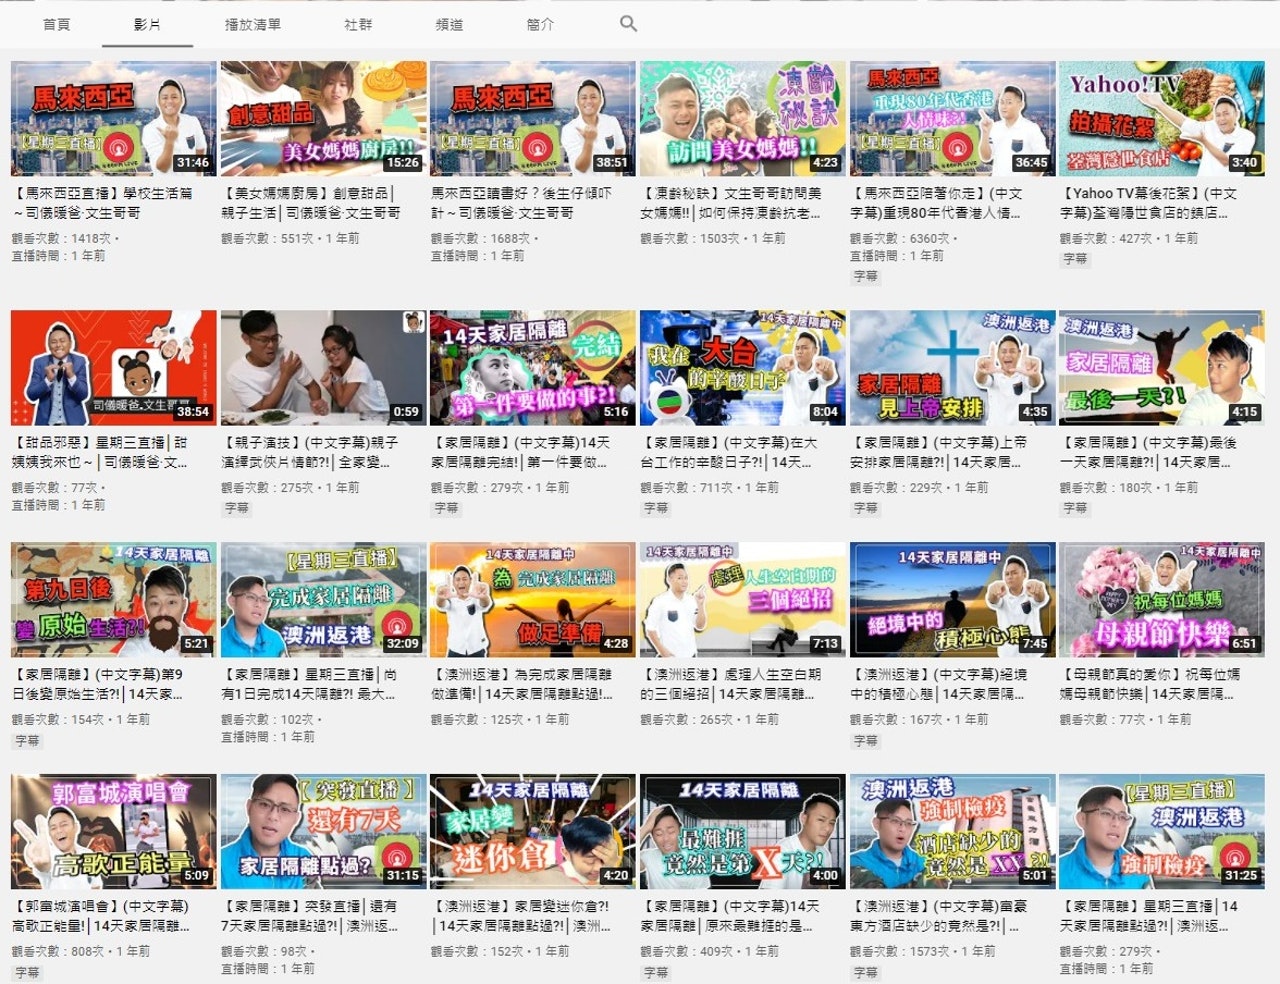 伍文生在YouTube上有不少精彩影片。